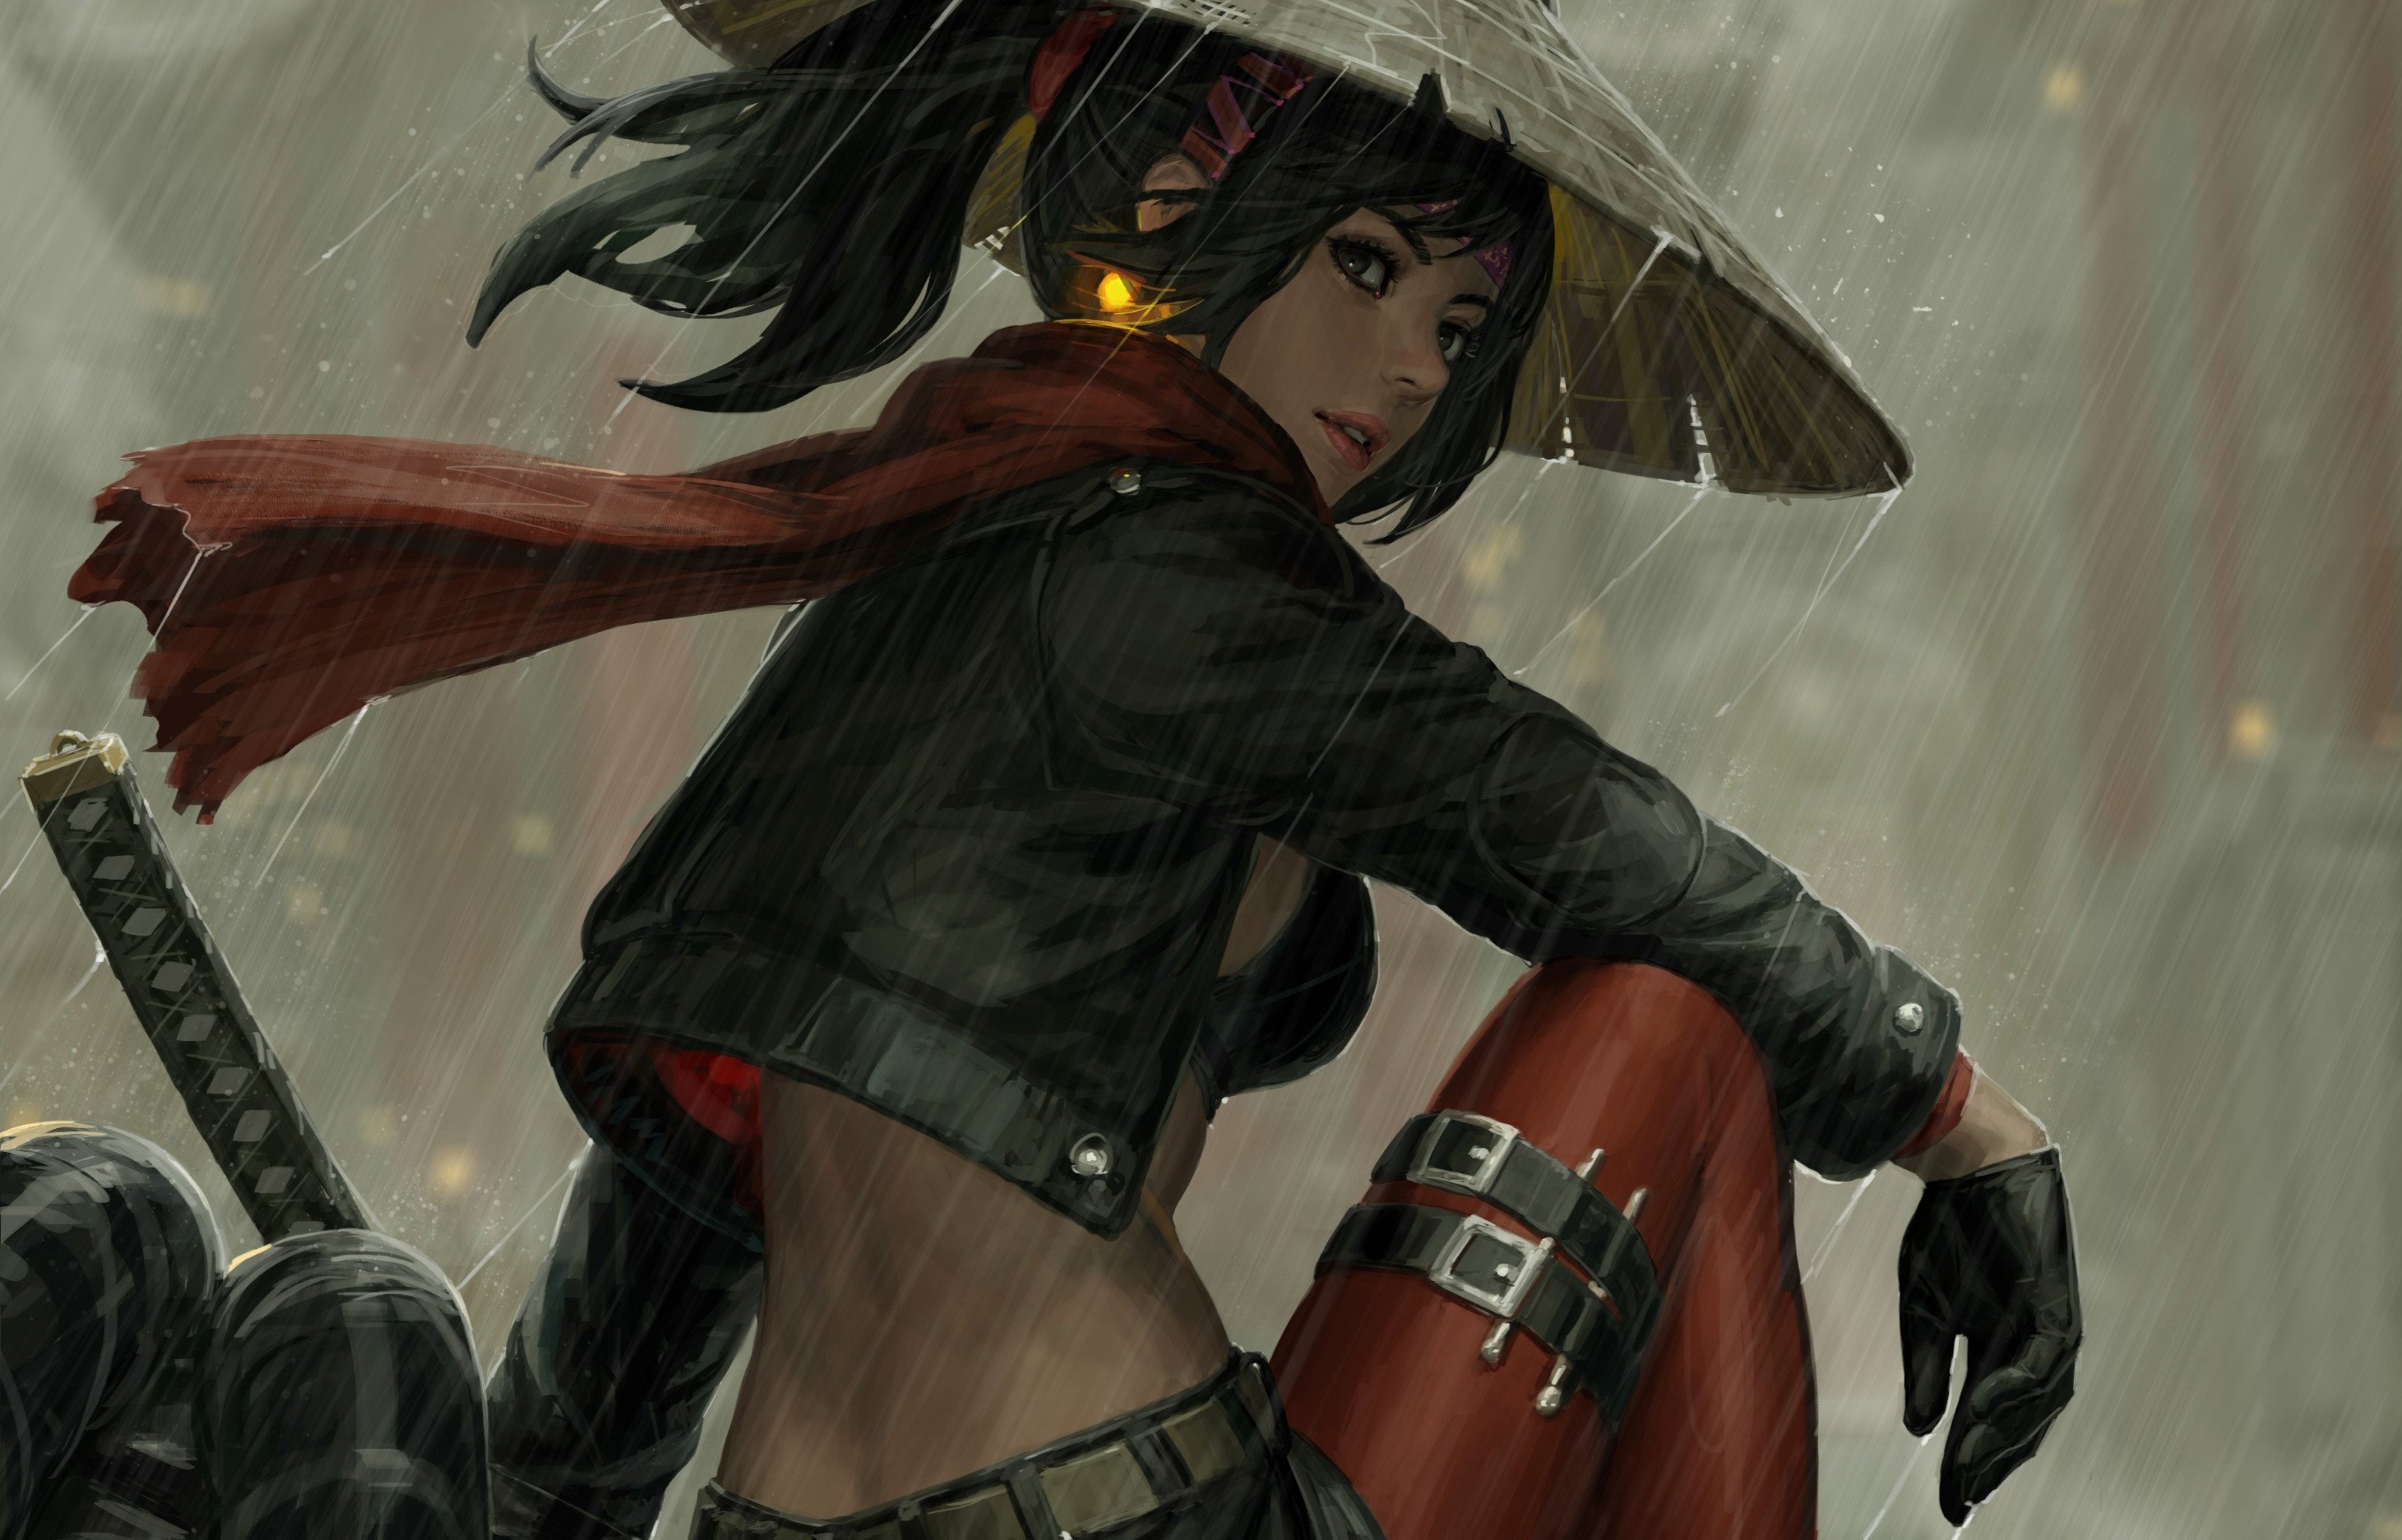 Samurai Girl warrior  guerrière samurai Wall  Poster Grand format A0